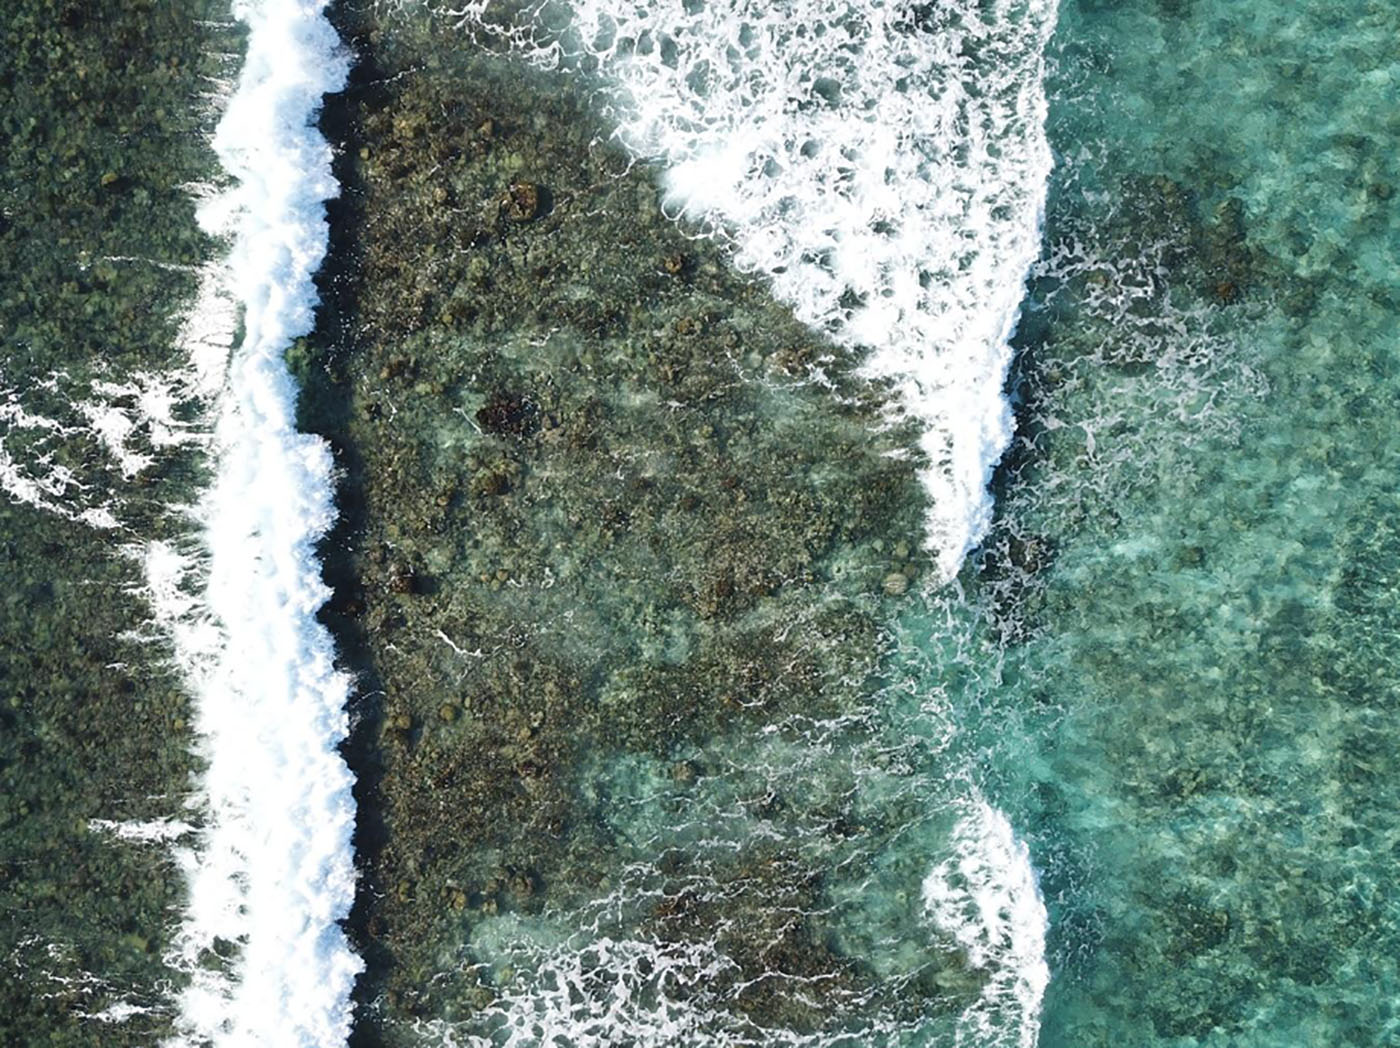 Toma aérea de la zona de rompiente del oleaje sobre la barrera arrecifal de Sound Bay, en San Andrés. Foto: Julián Prato Valderrama, candidato a doctor en Biología Marina de la UNAL.